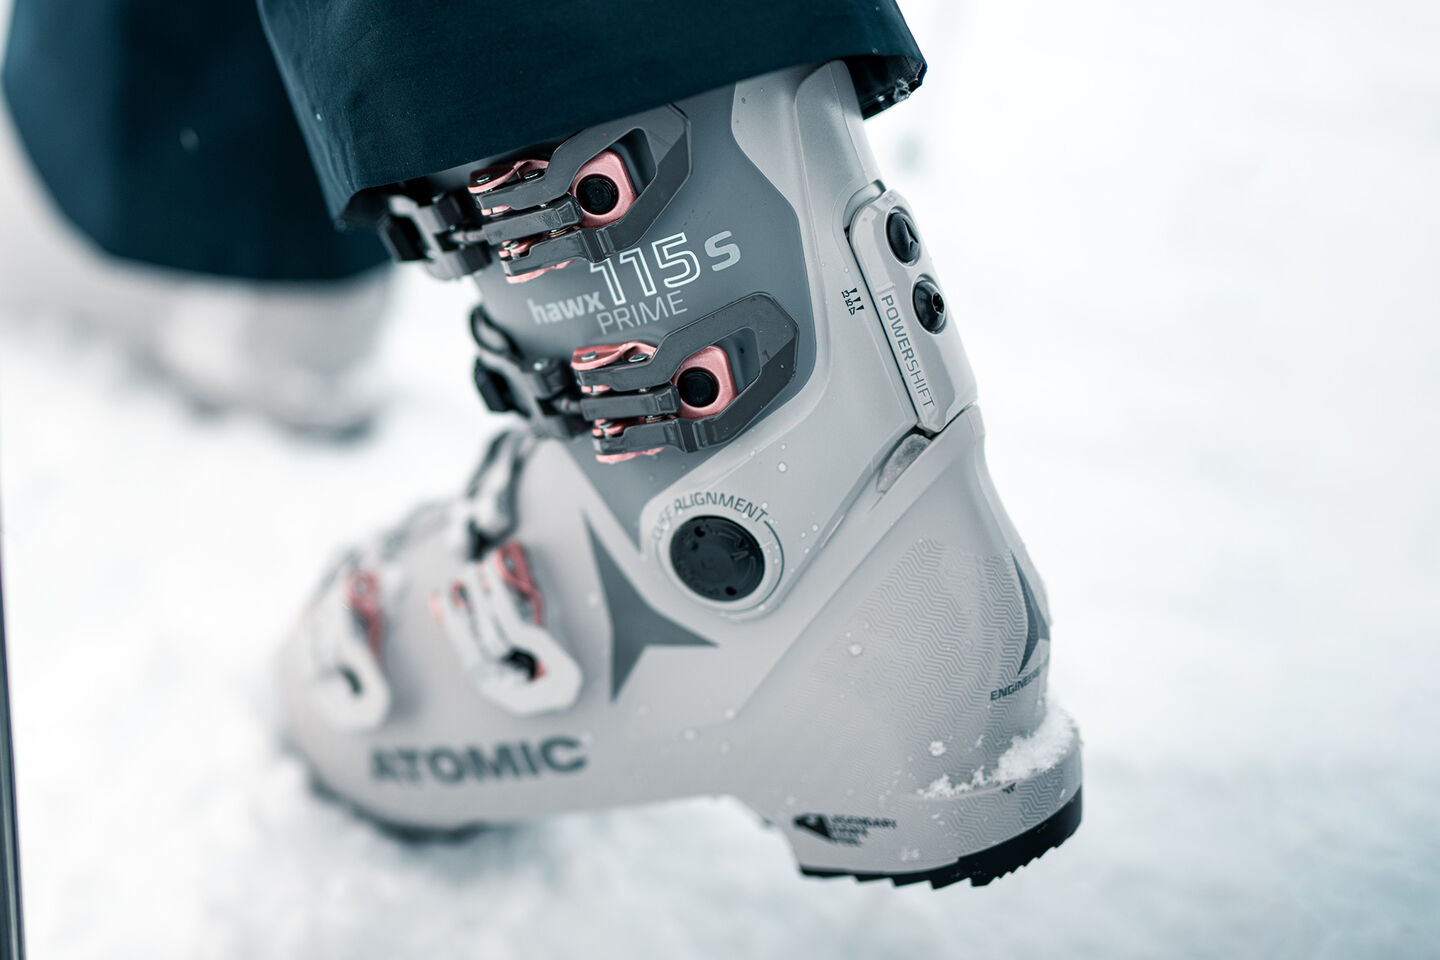 atomic ski boot in snow